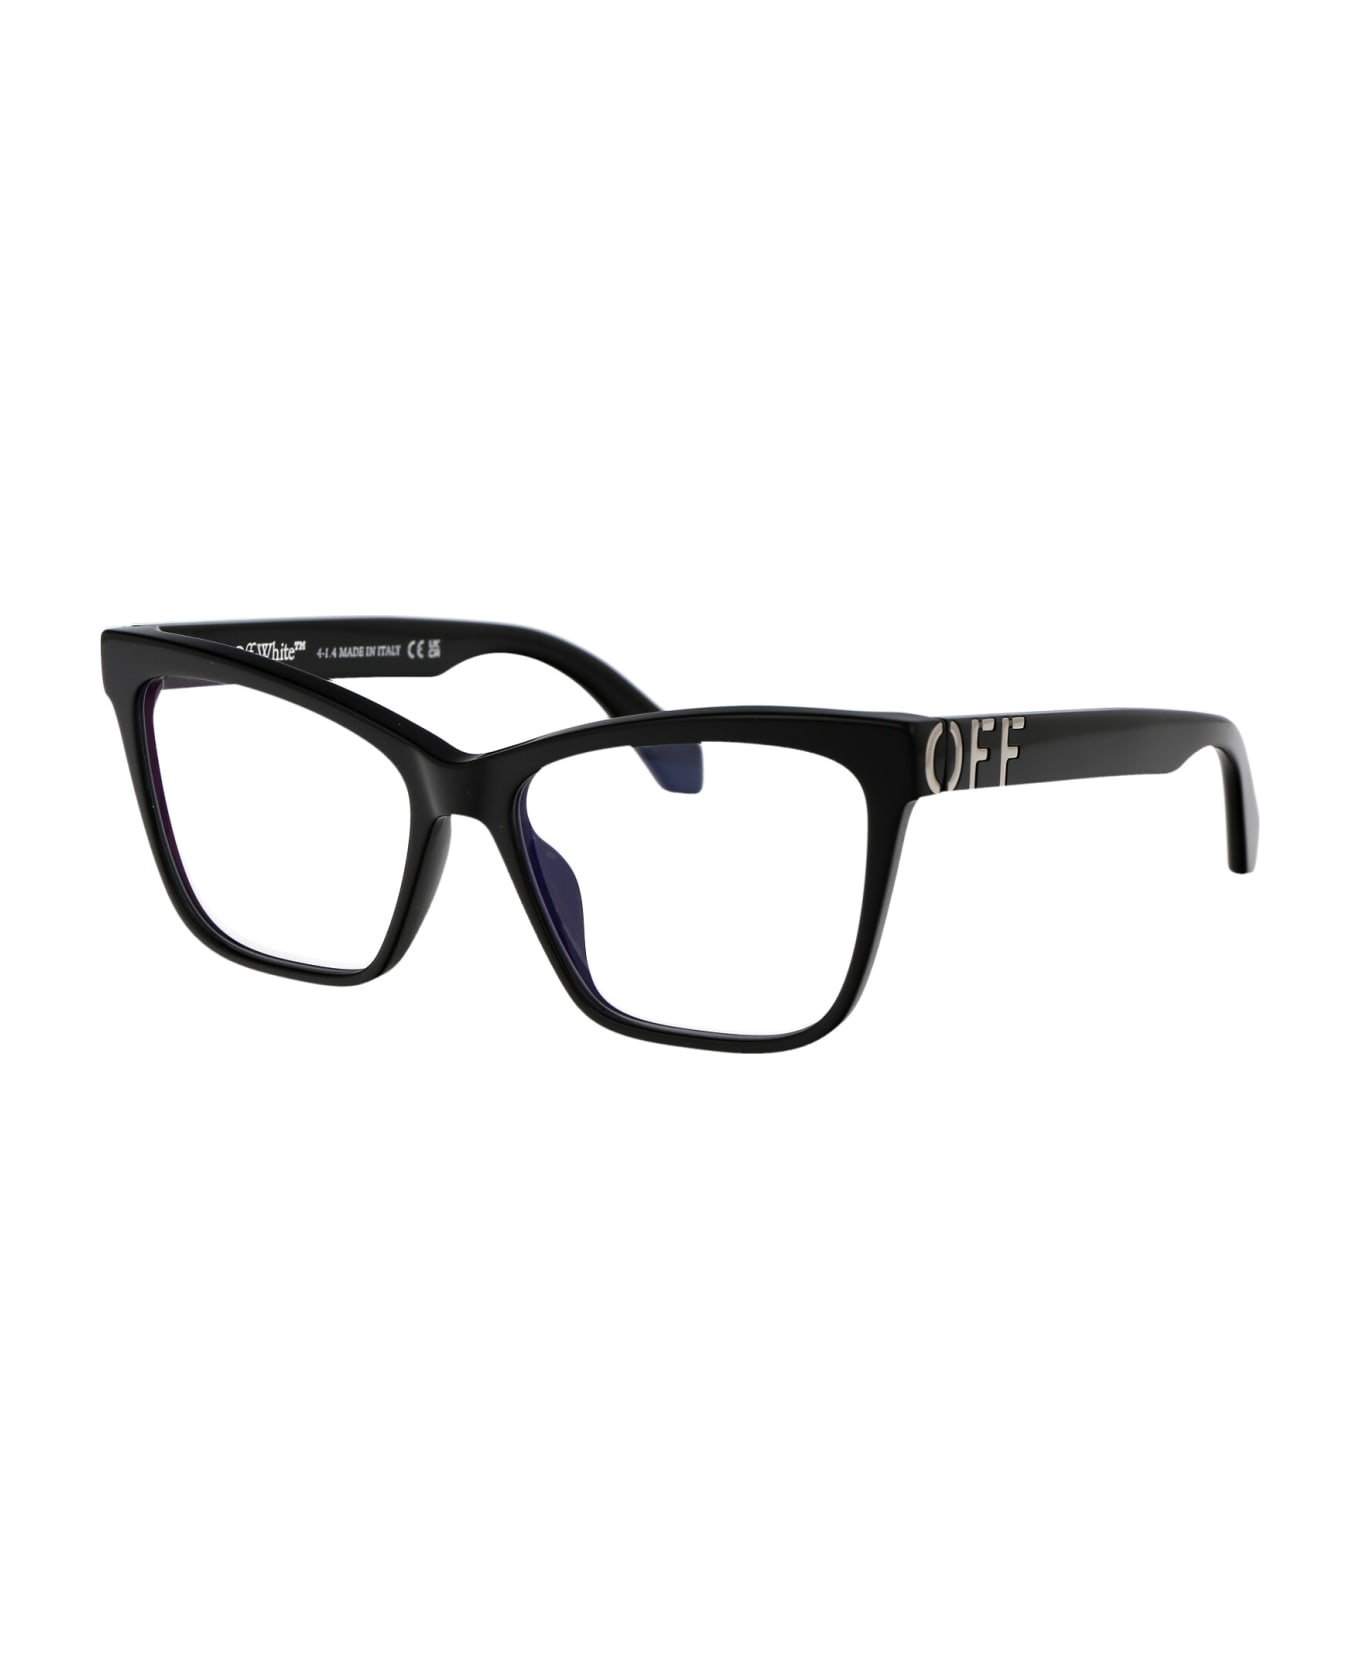 Off-White Optical Style 67 Glasses - 1000 BLACK アイウェア